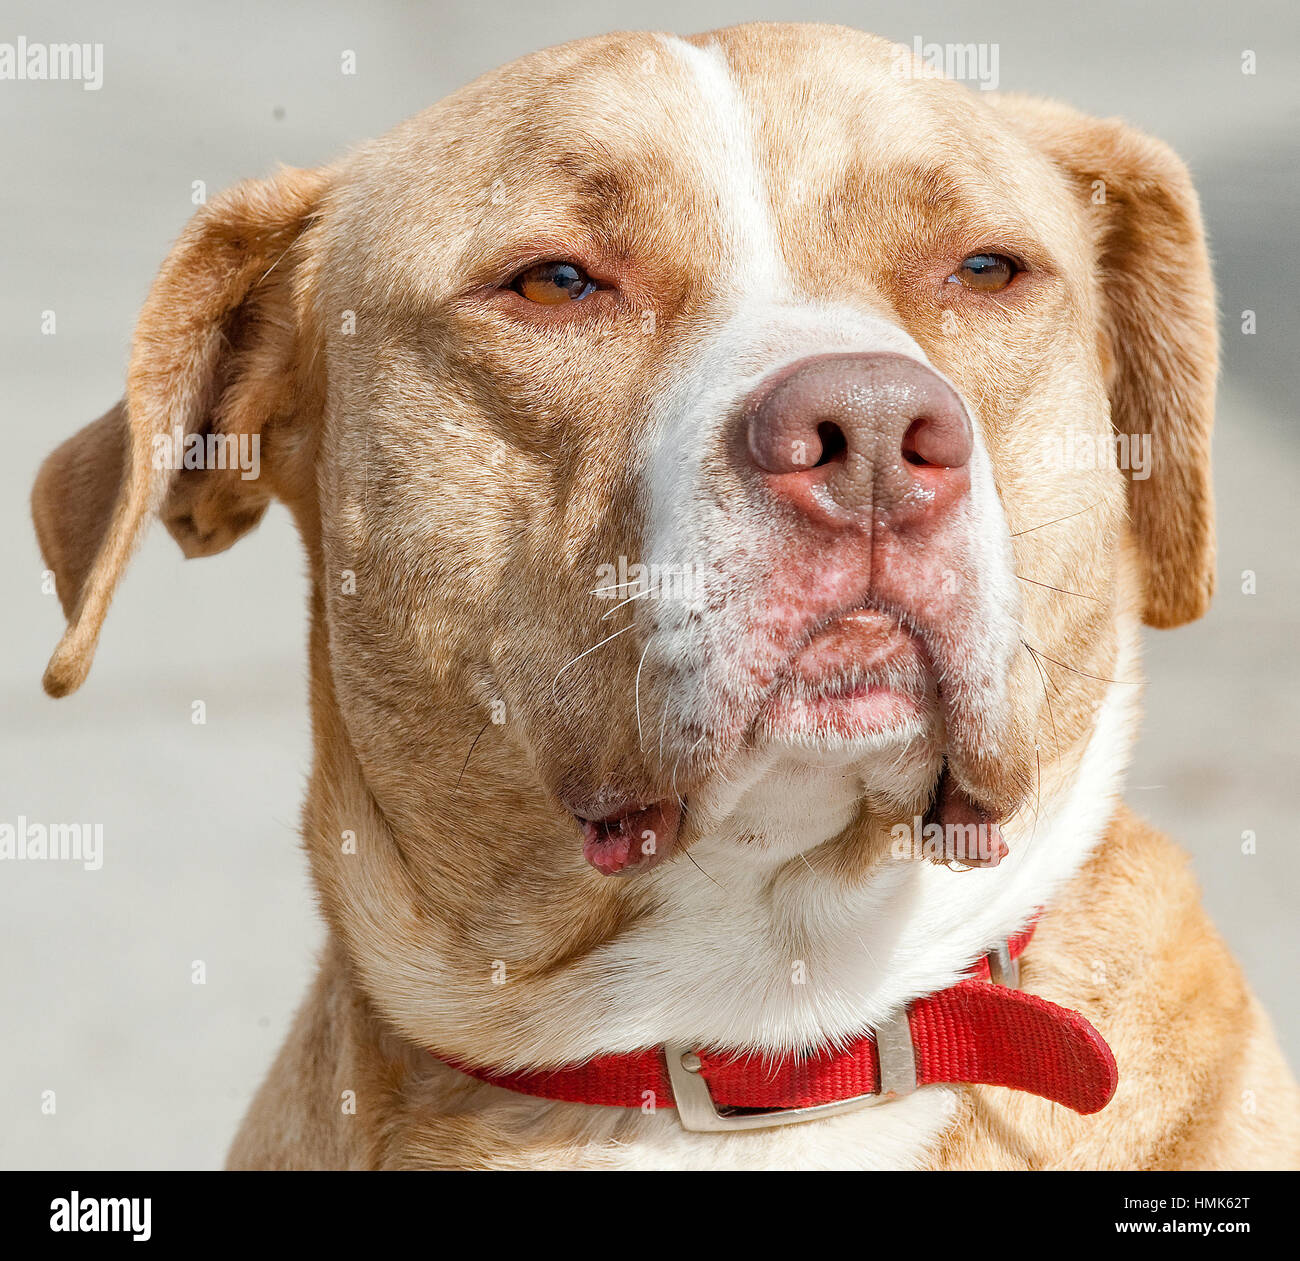 Marrón con banda blanca de perro de rescate con perros de raza mixta pitbull cerrar headshot regal expresión Foto de stock